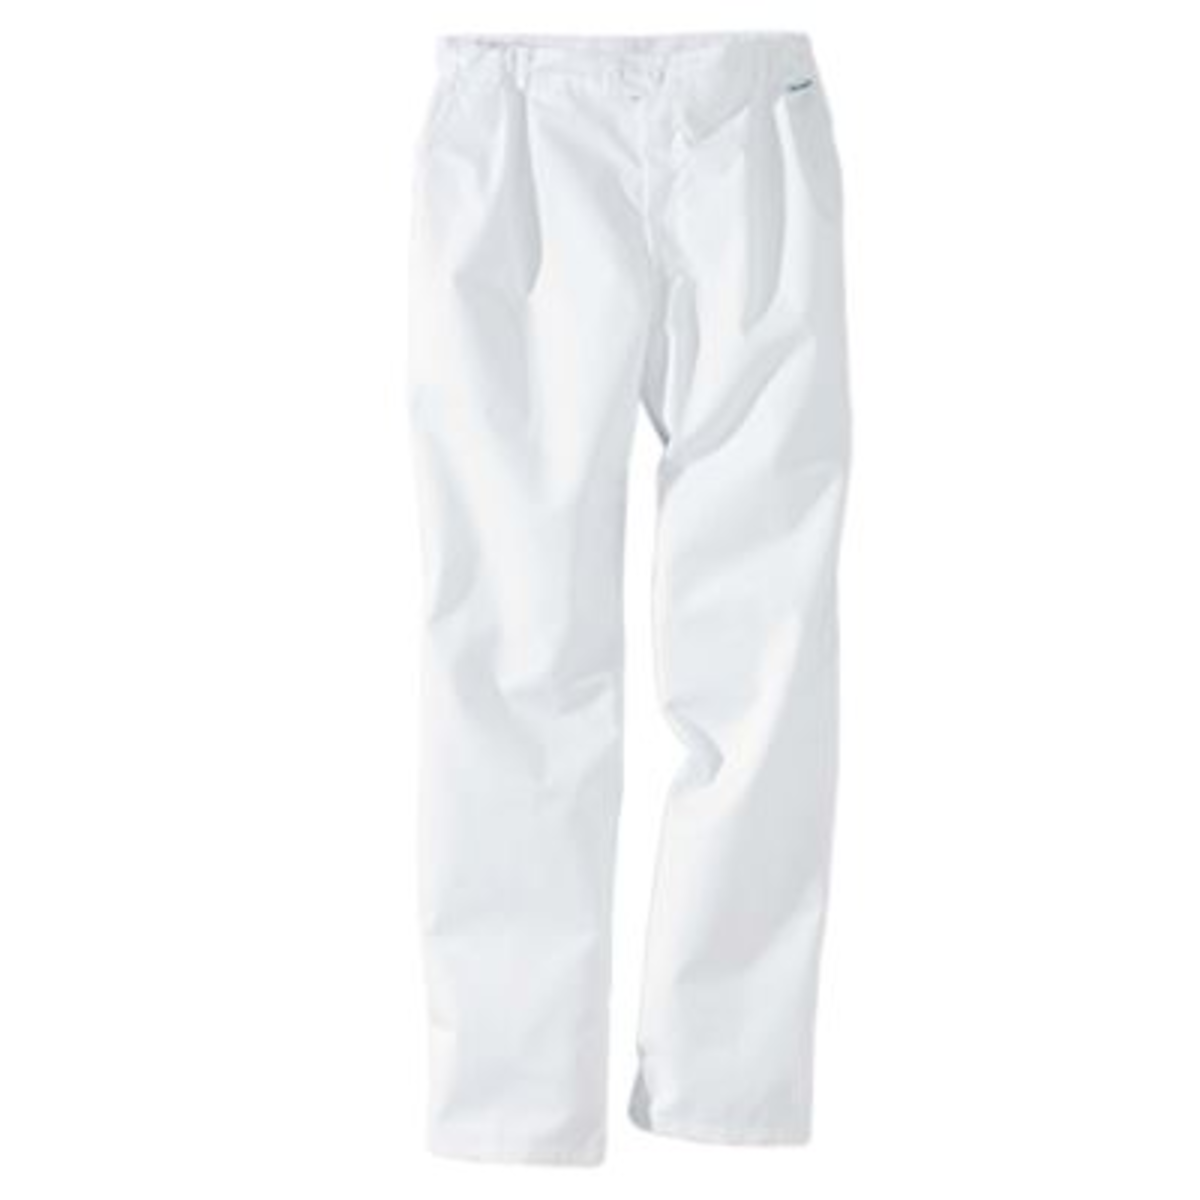 Pantalon de cuisine PBO3 blanc T.44 - Molinel - 19452121001